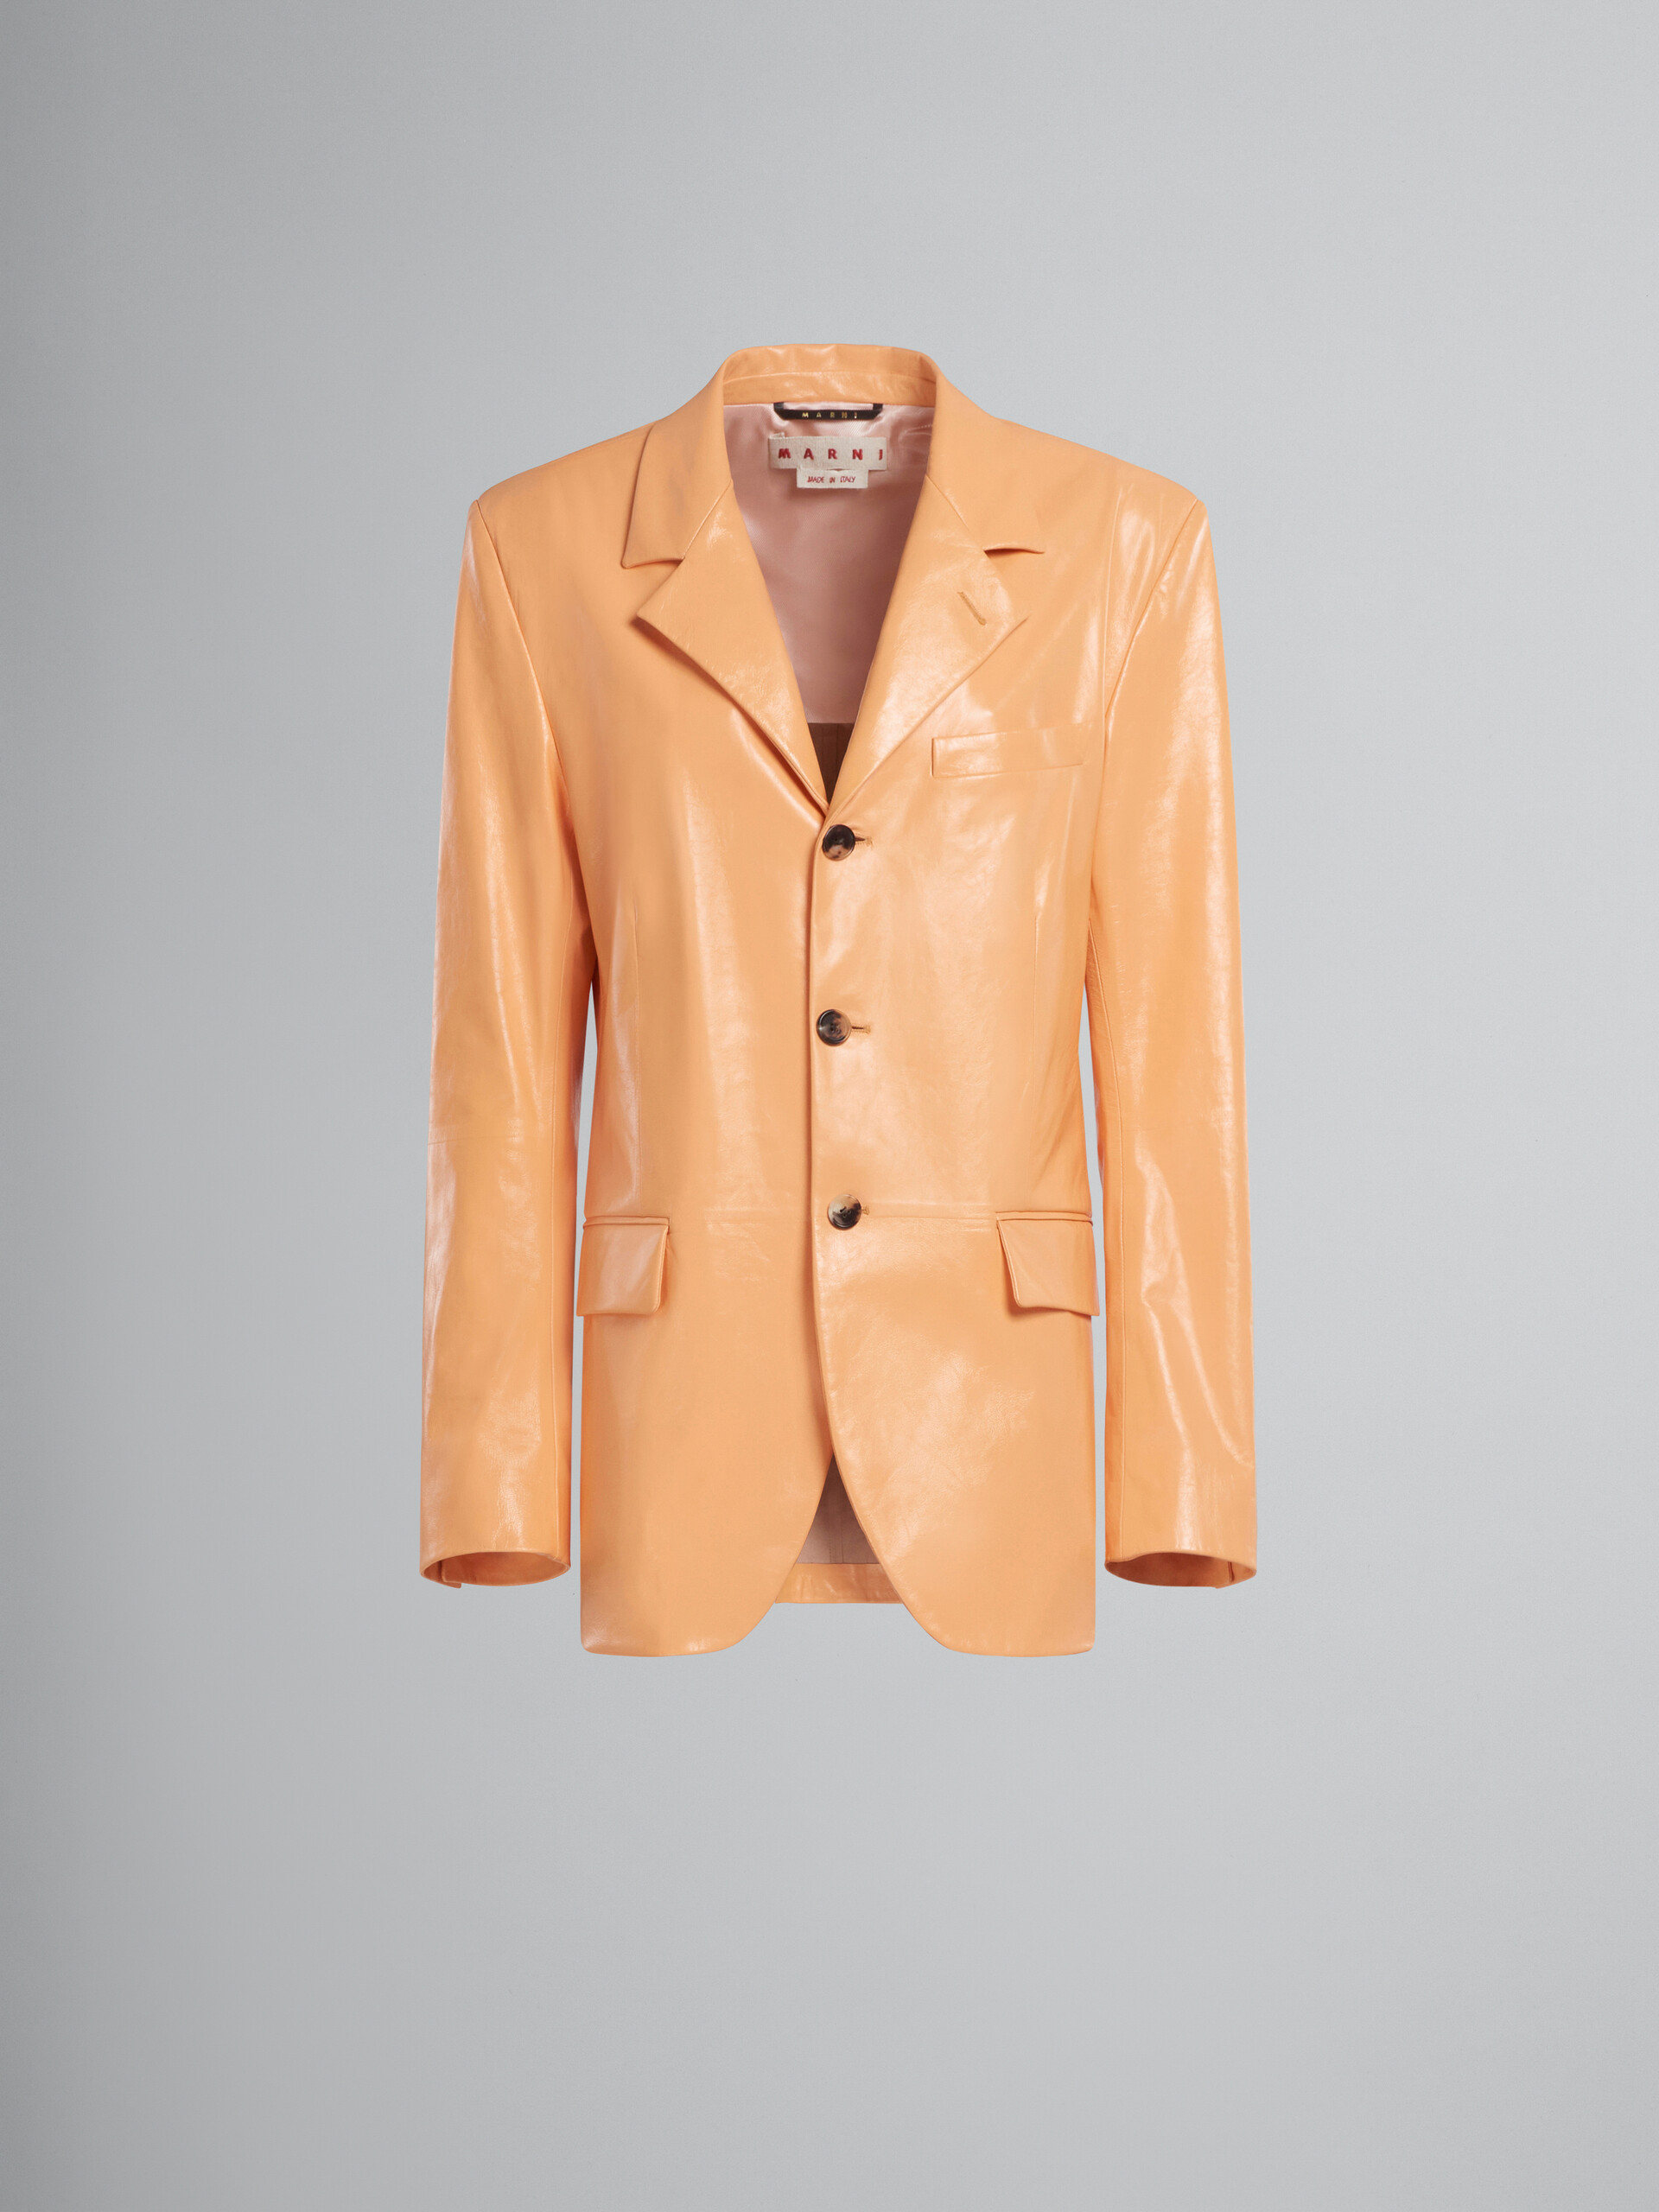 Orange single-breasted leather blazer - Jackets - Image 1